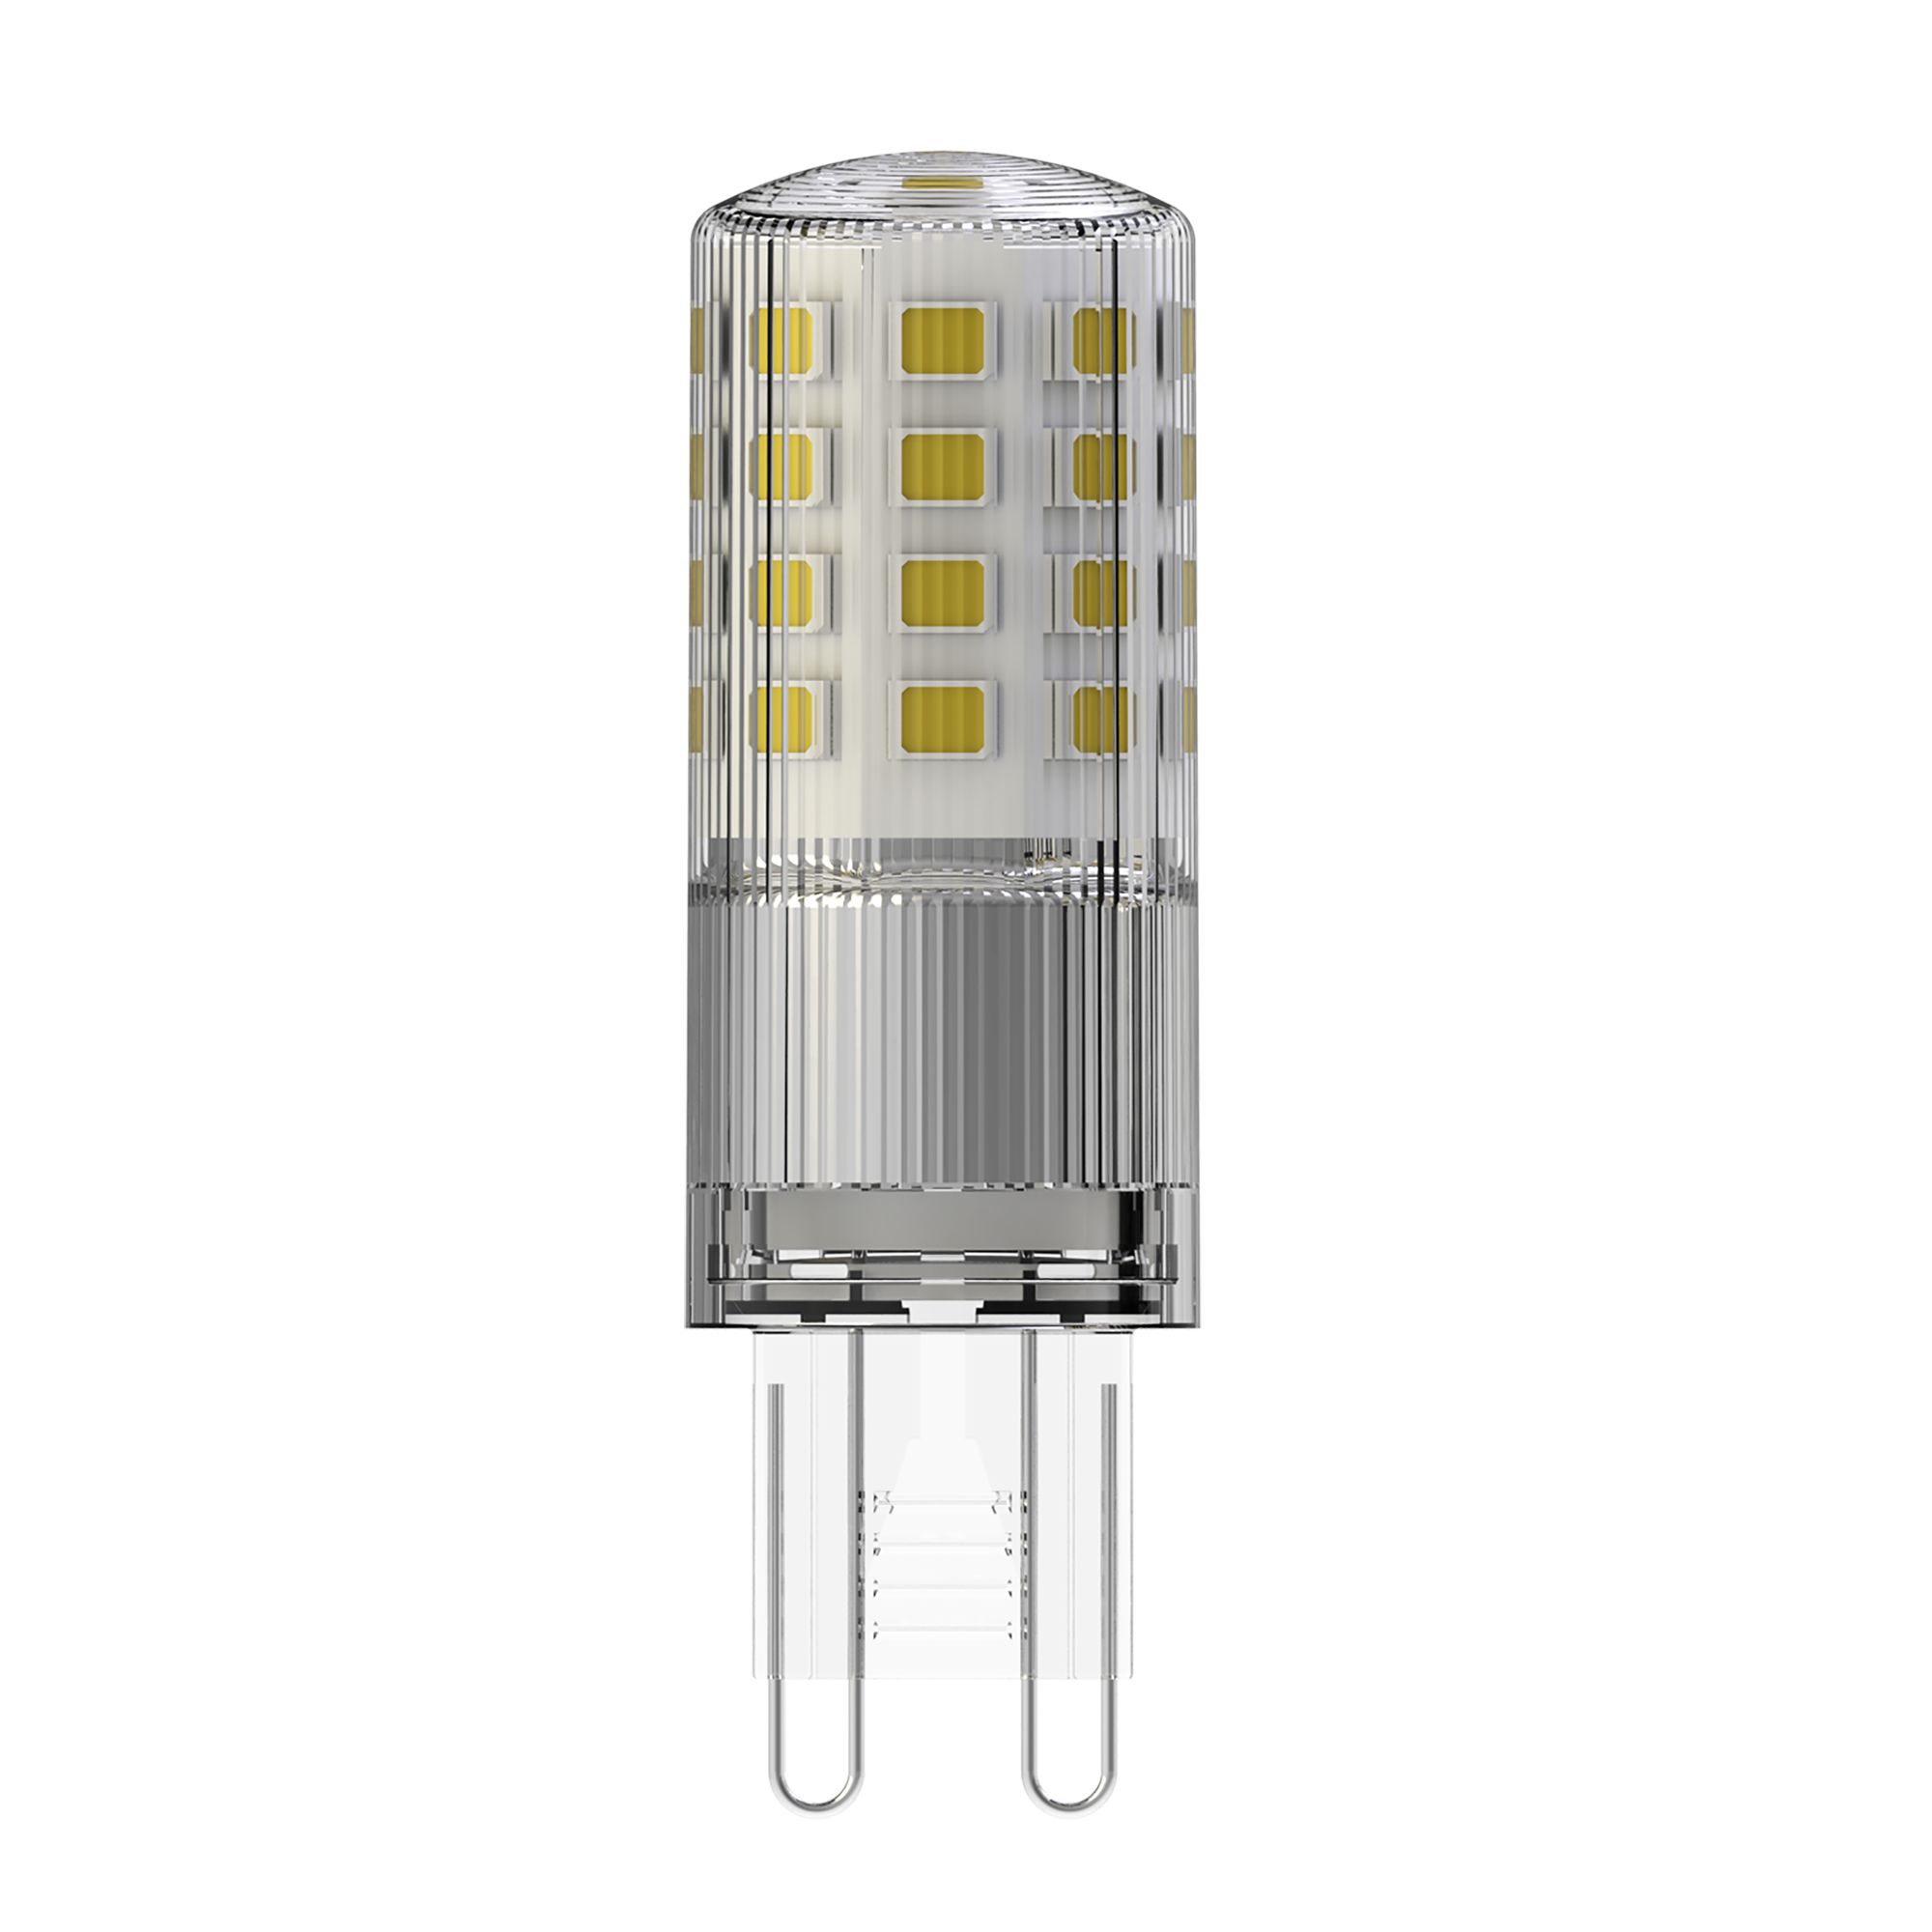 Jacobsen G9 4W Neutral white LED Dimmable Light bulb, Pack of 2